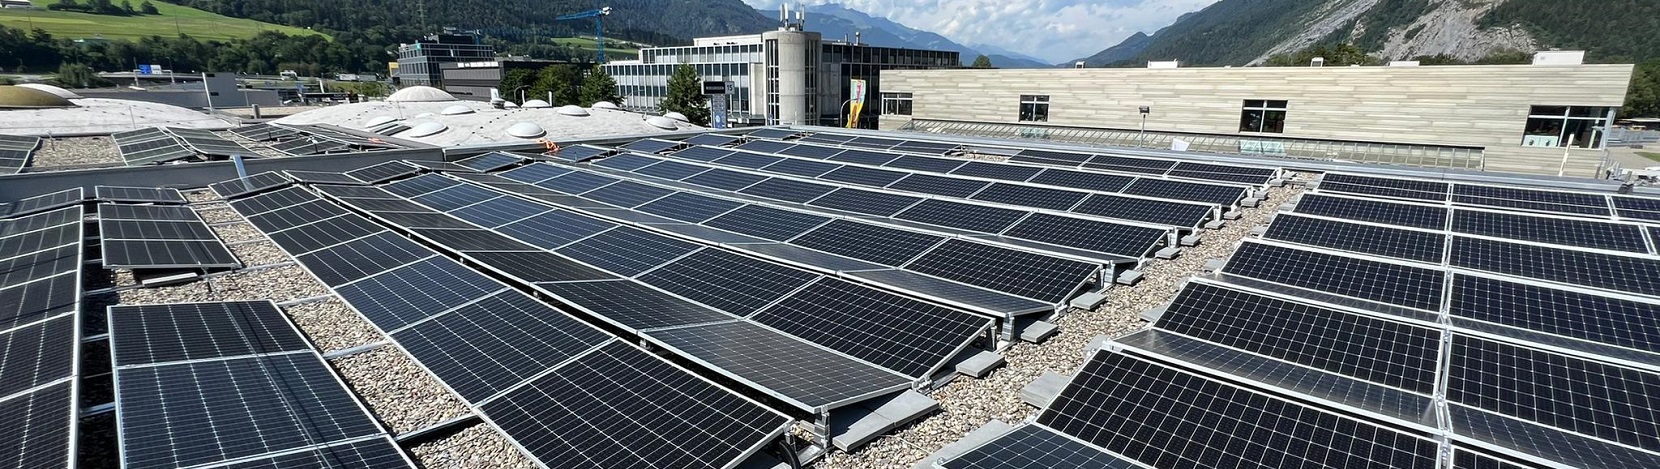 Neue PV-Anlage auf dem Dach der Amag Chur – Electrosuisse